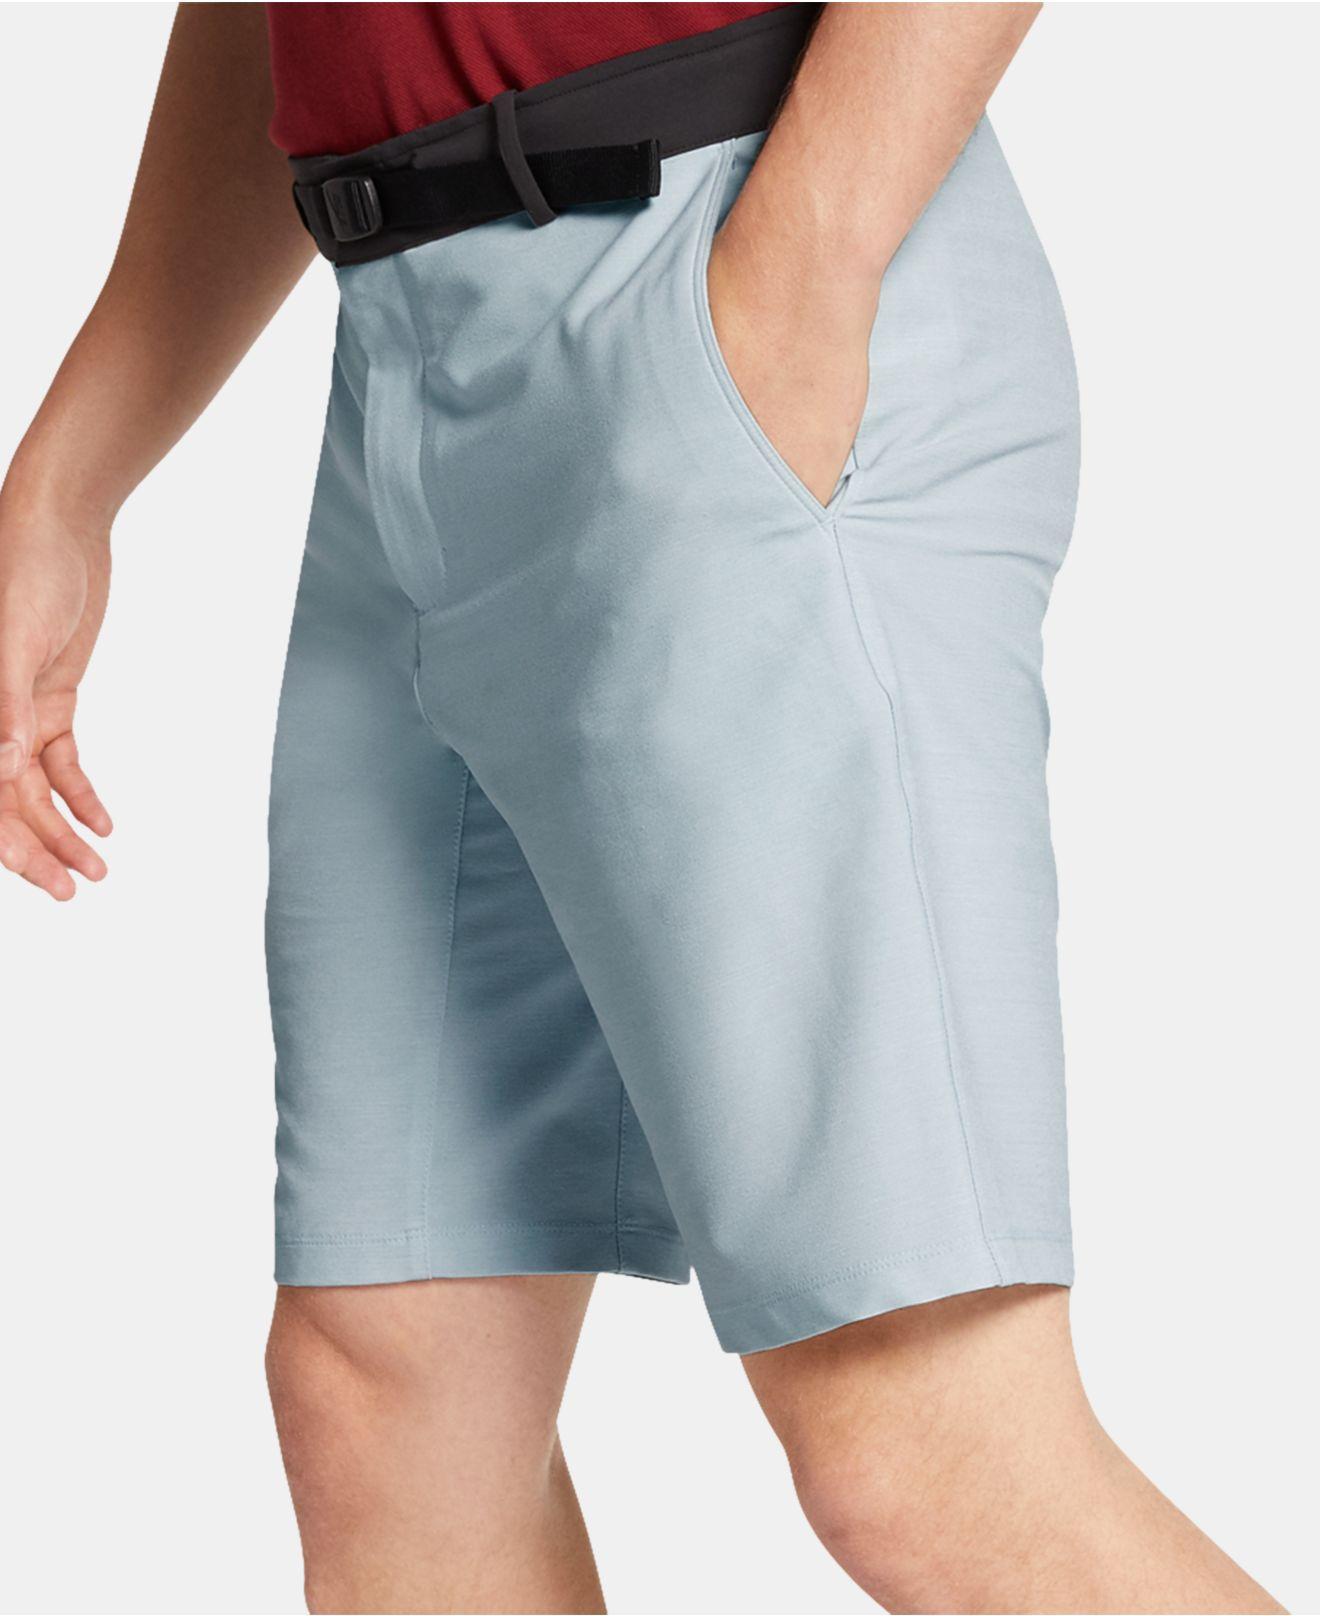 nike flex novelty golf shorts